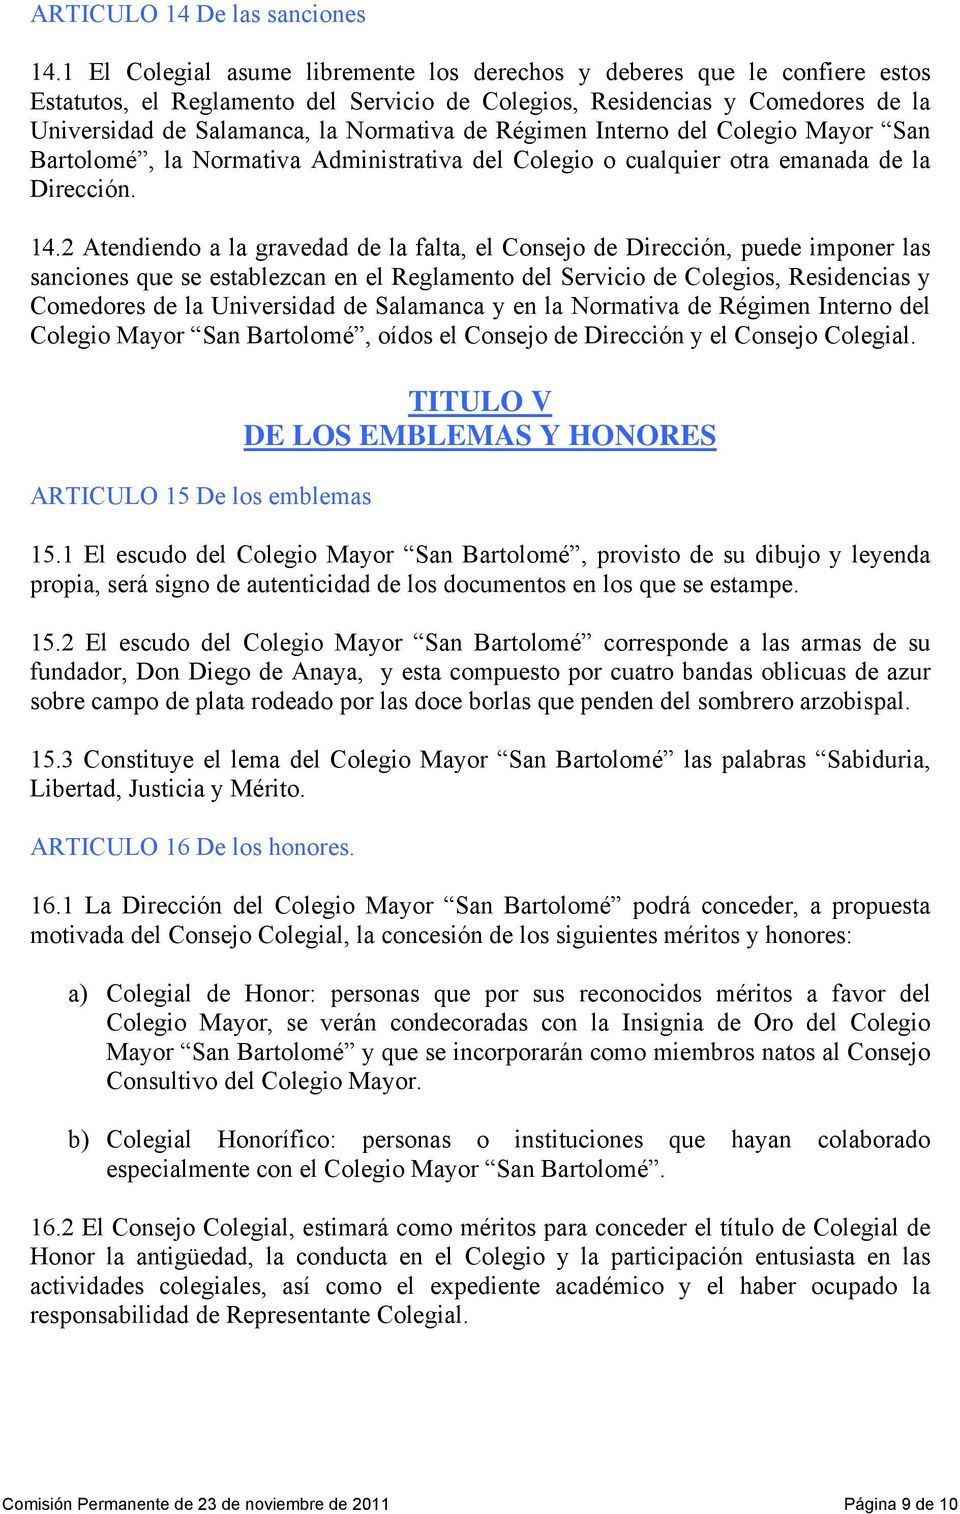 Régimen Interno del Colegio Mayor San Bartolomé, la Normativa Administrativa del Colegio o cualquier otra emanada de la Dirección. 14.